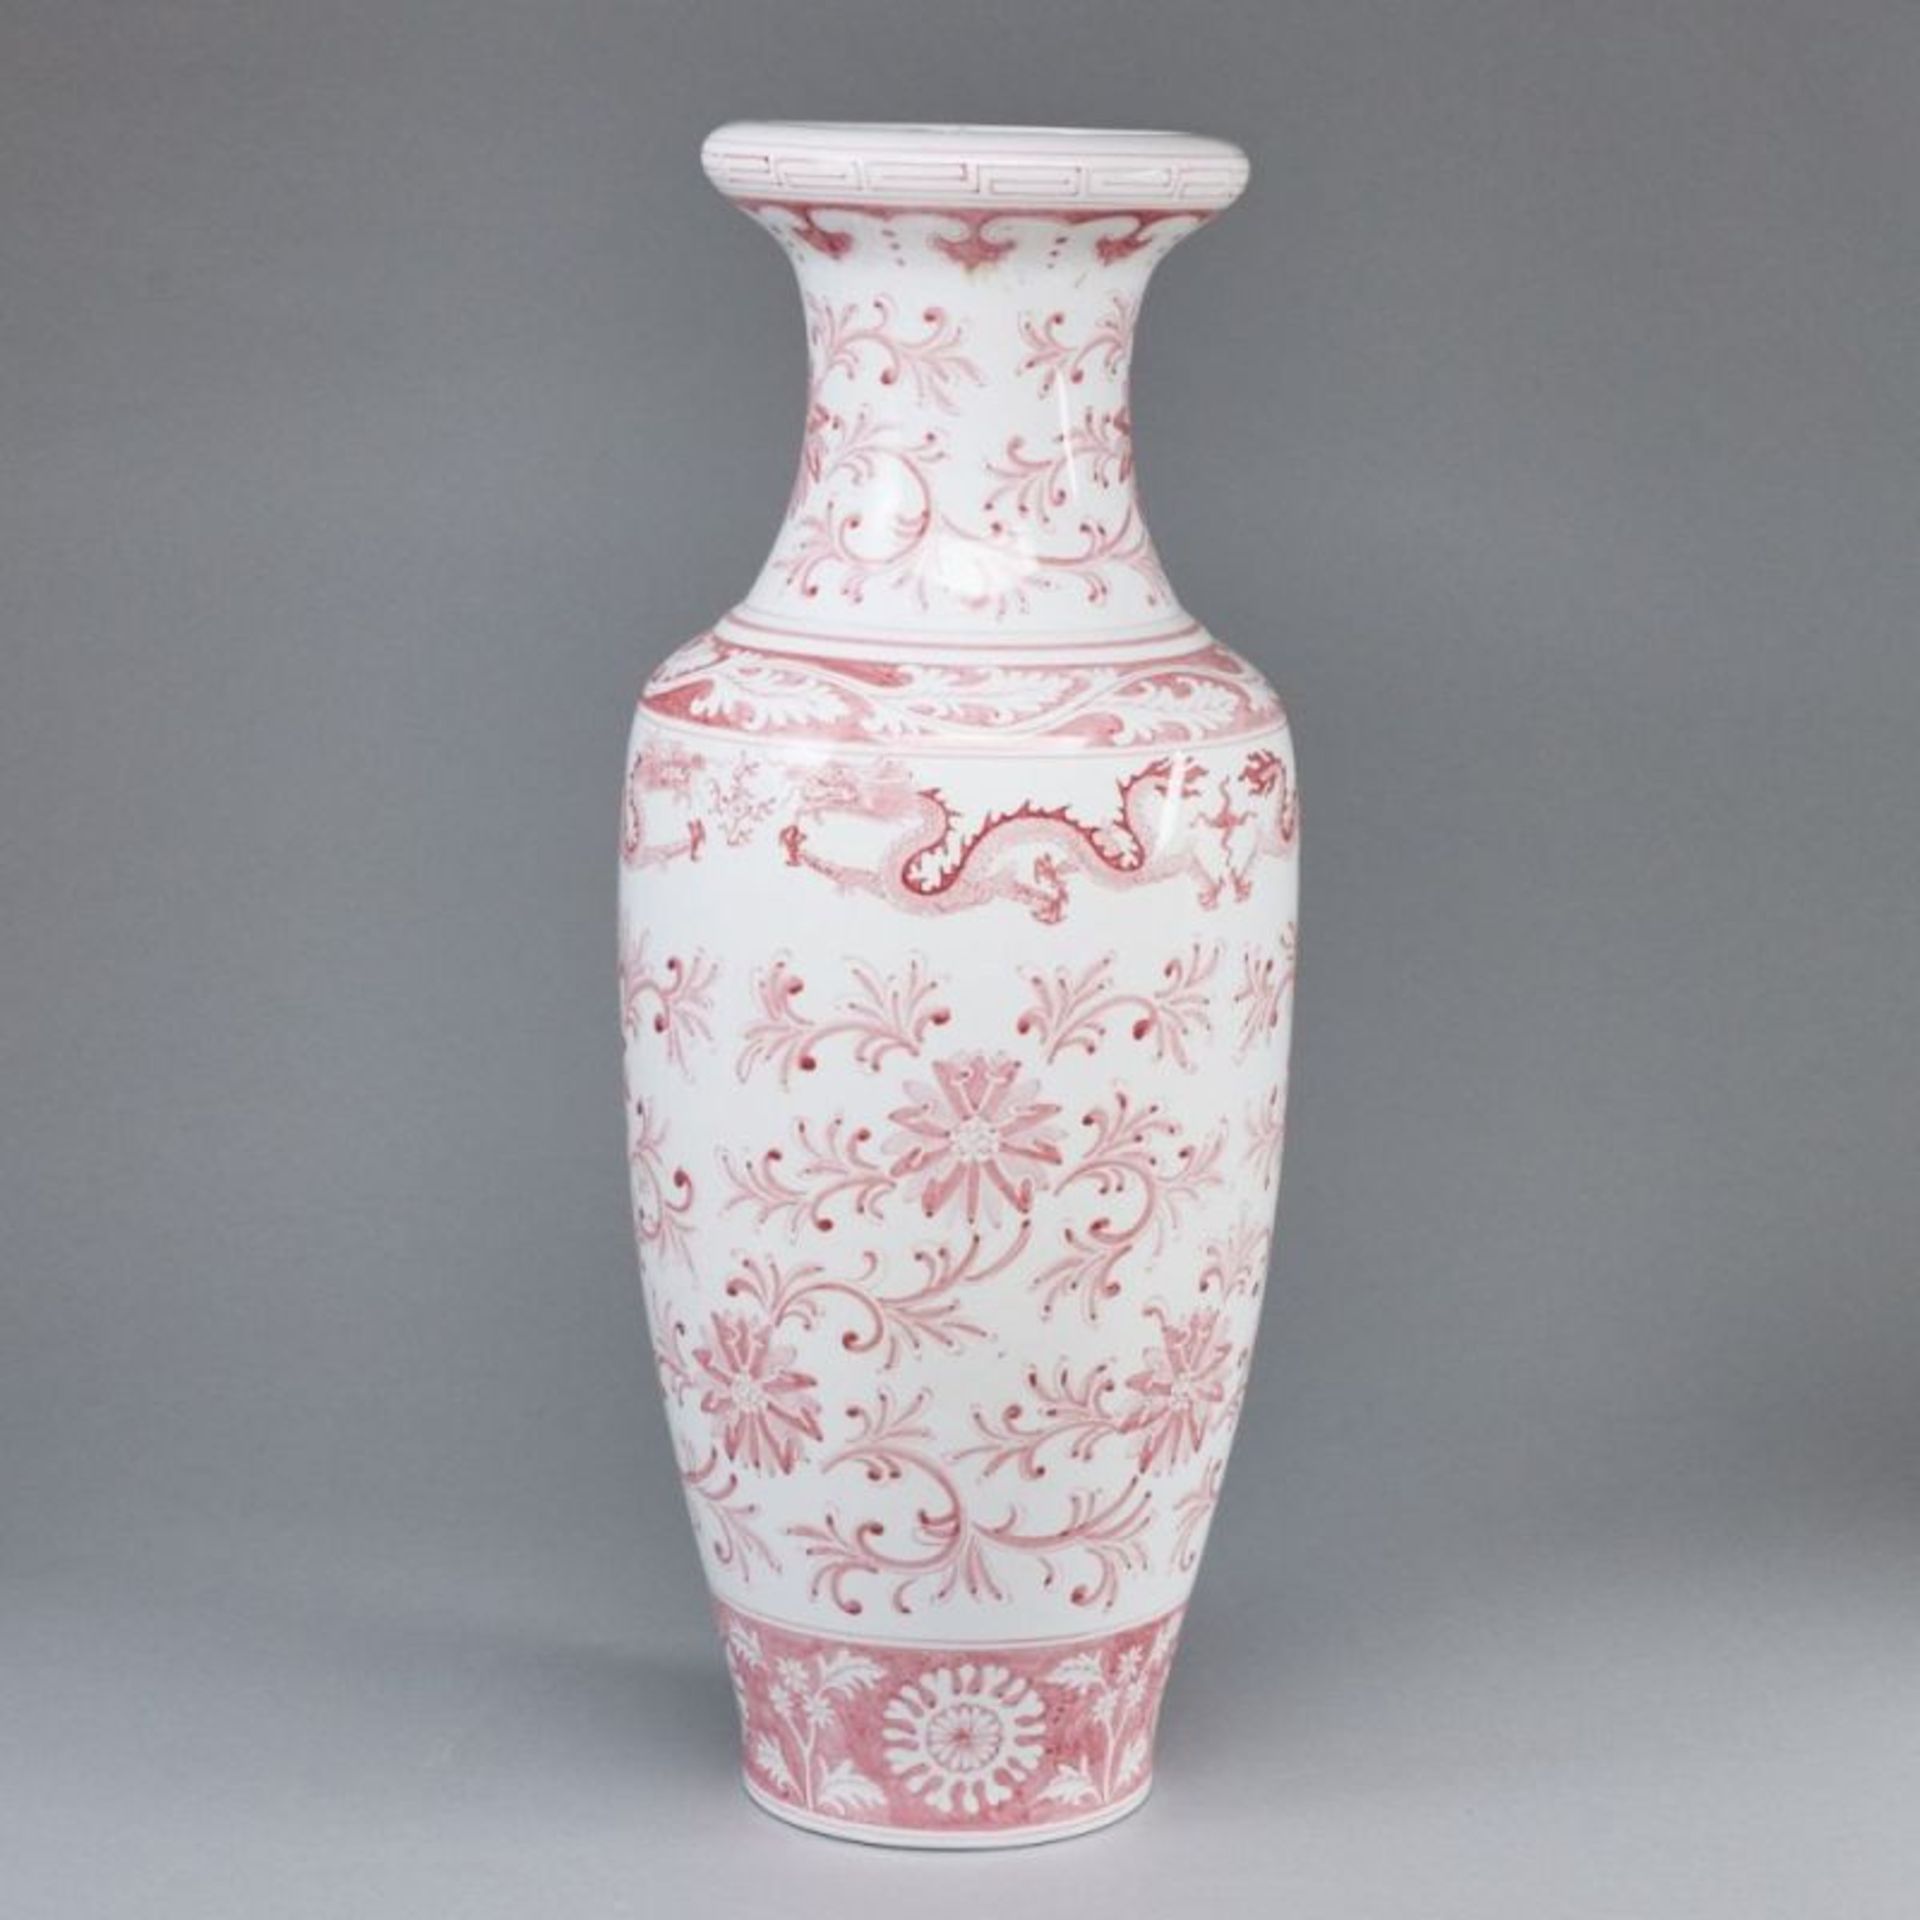 Bodenvase mit floralem Dekor, China - Image 3 of 4